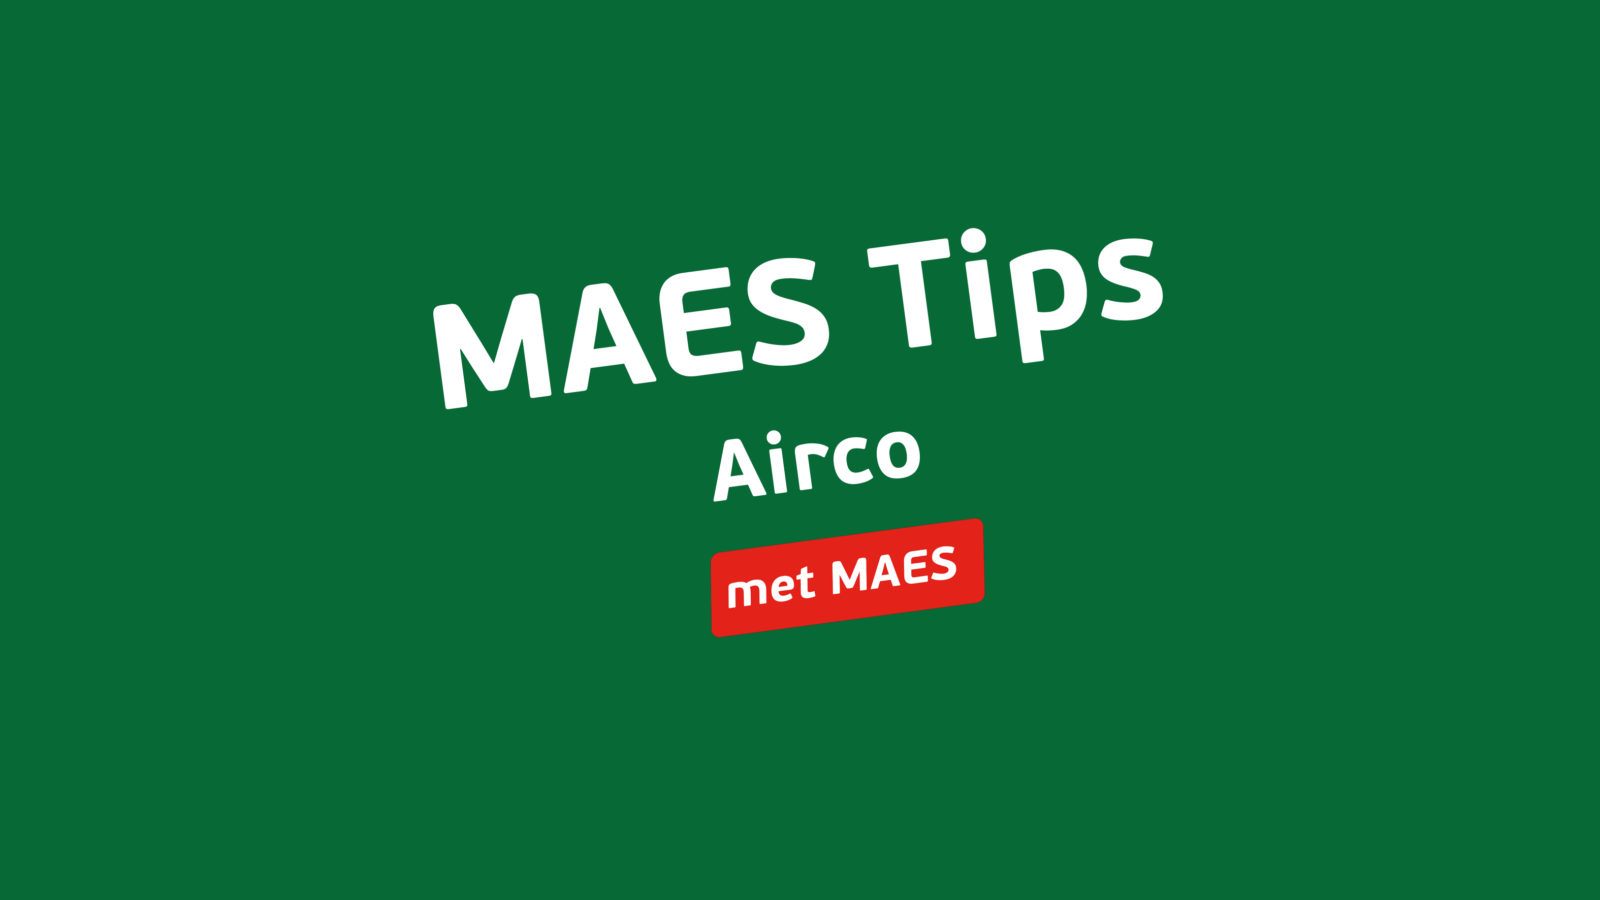 MAES Tips Airco